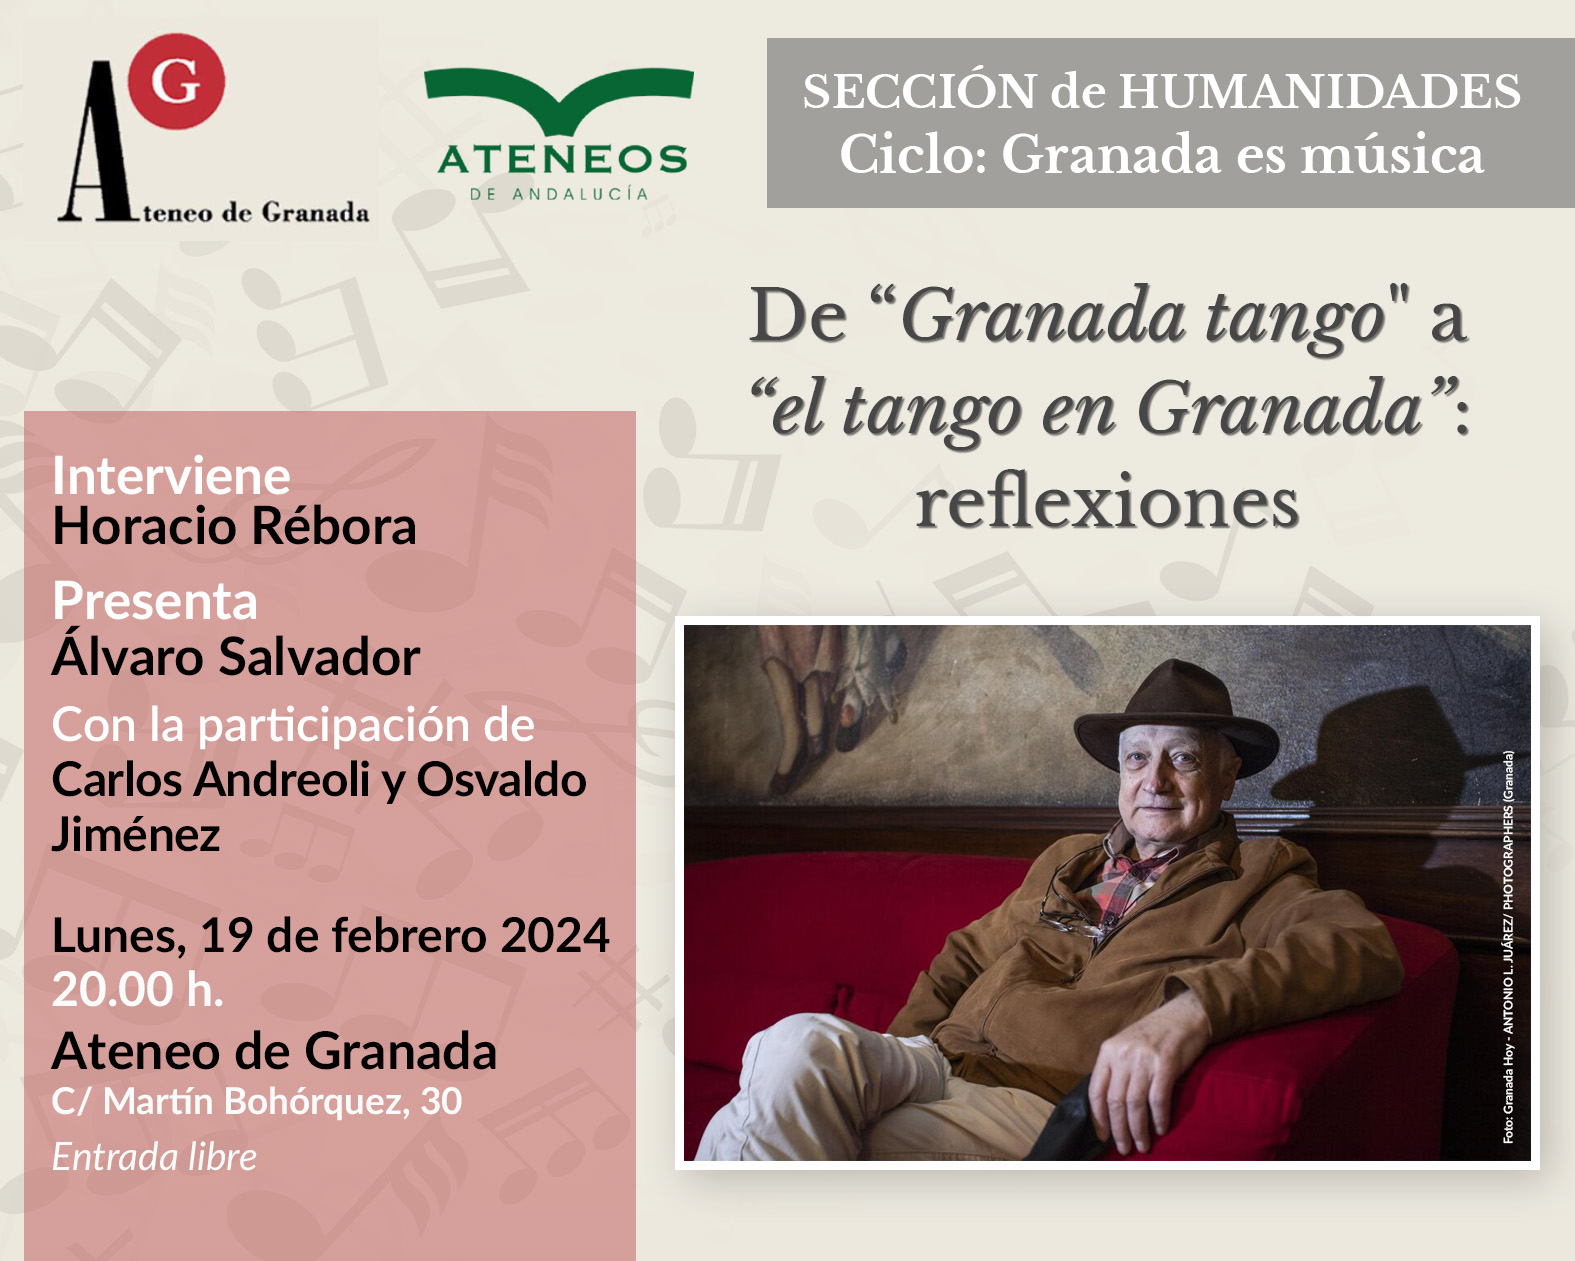 De "Granada tango" a "el tango en Granada": reflexiones